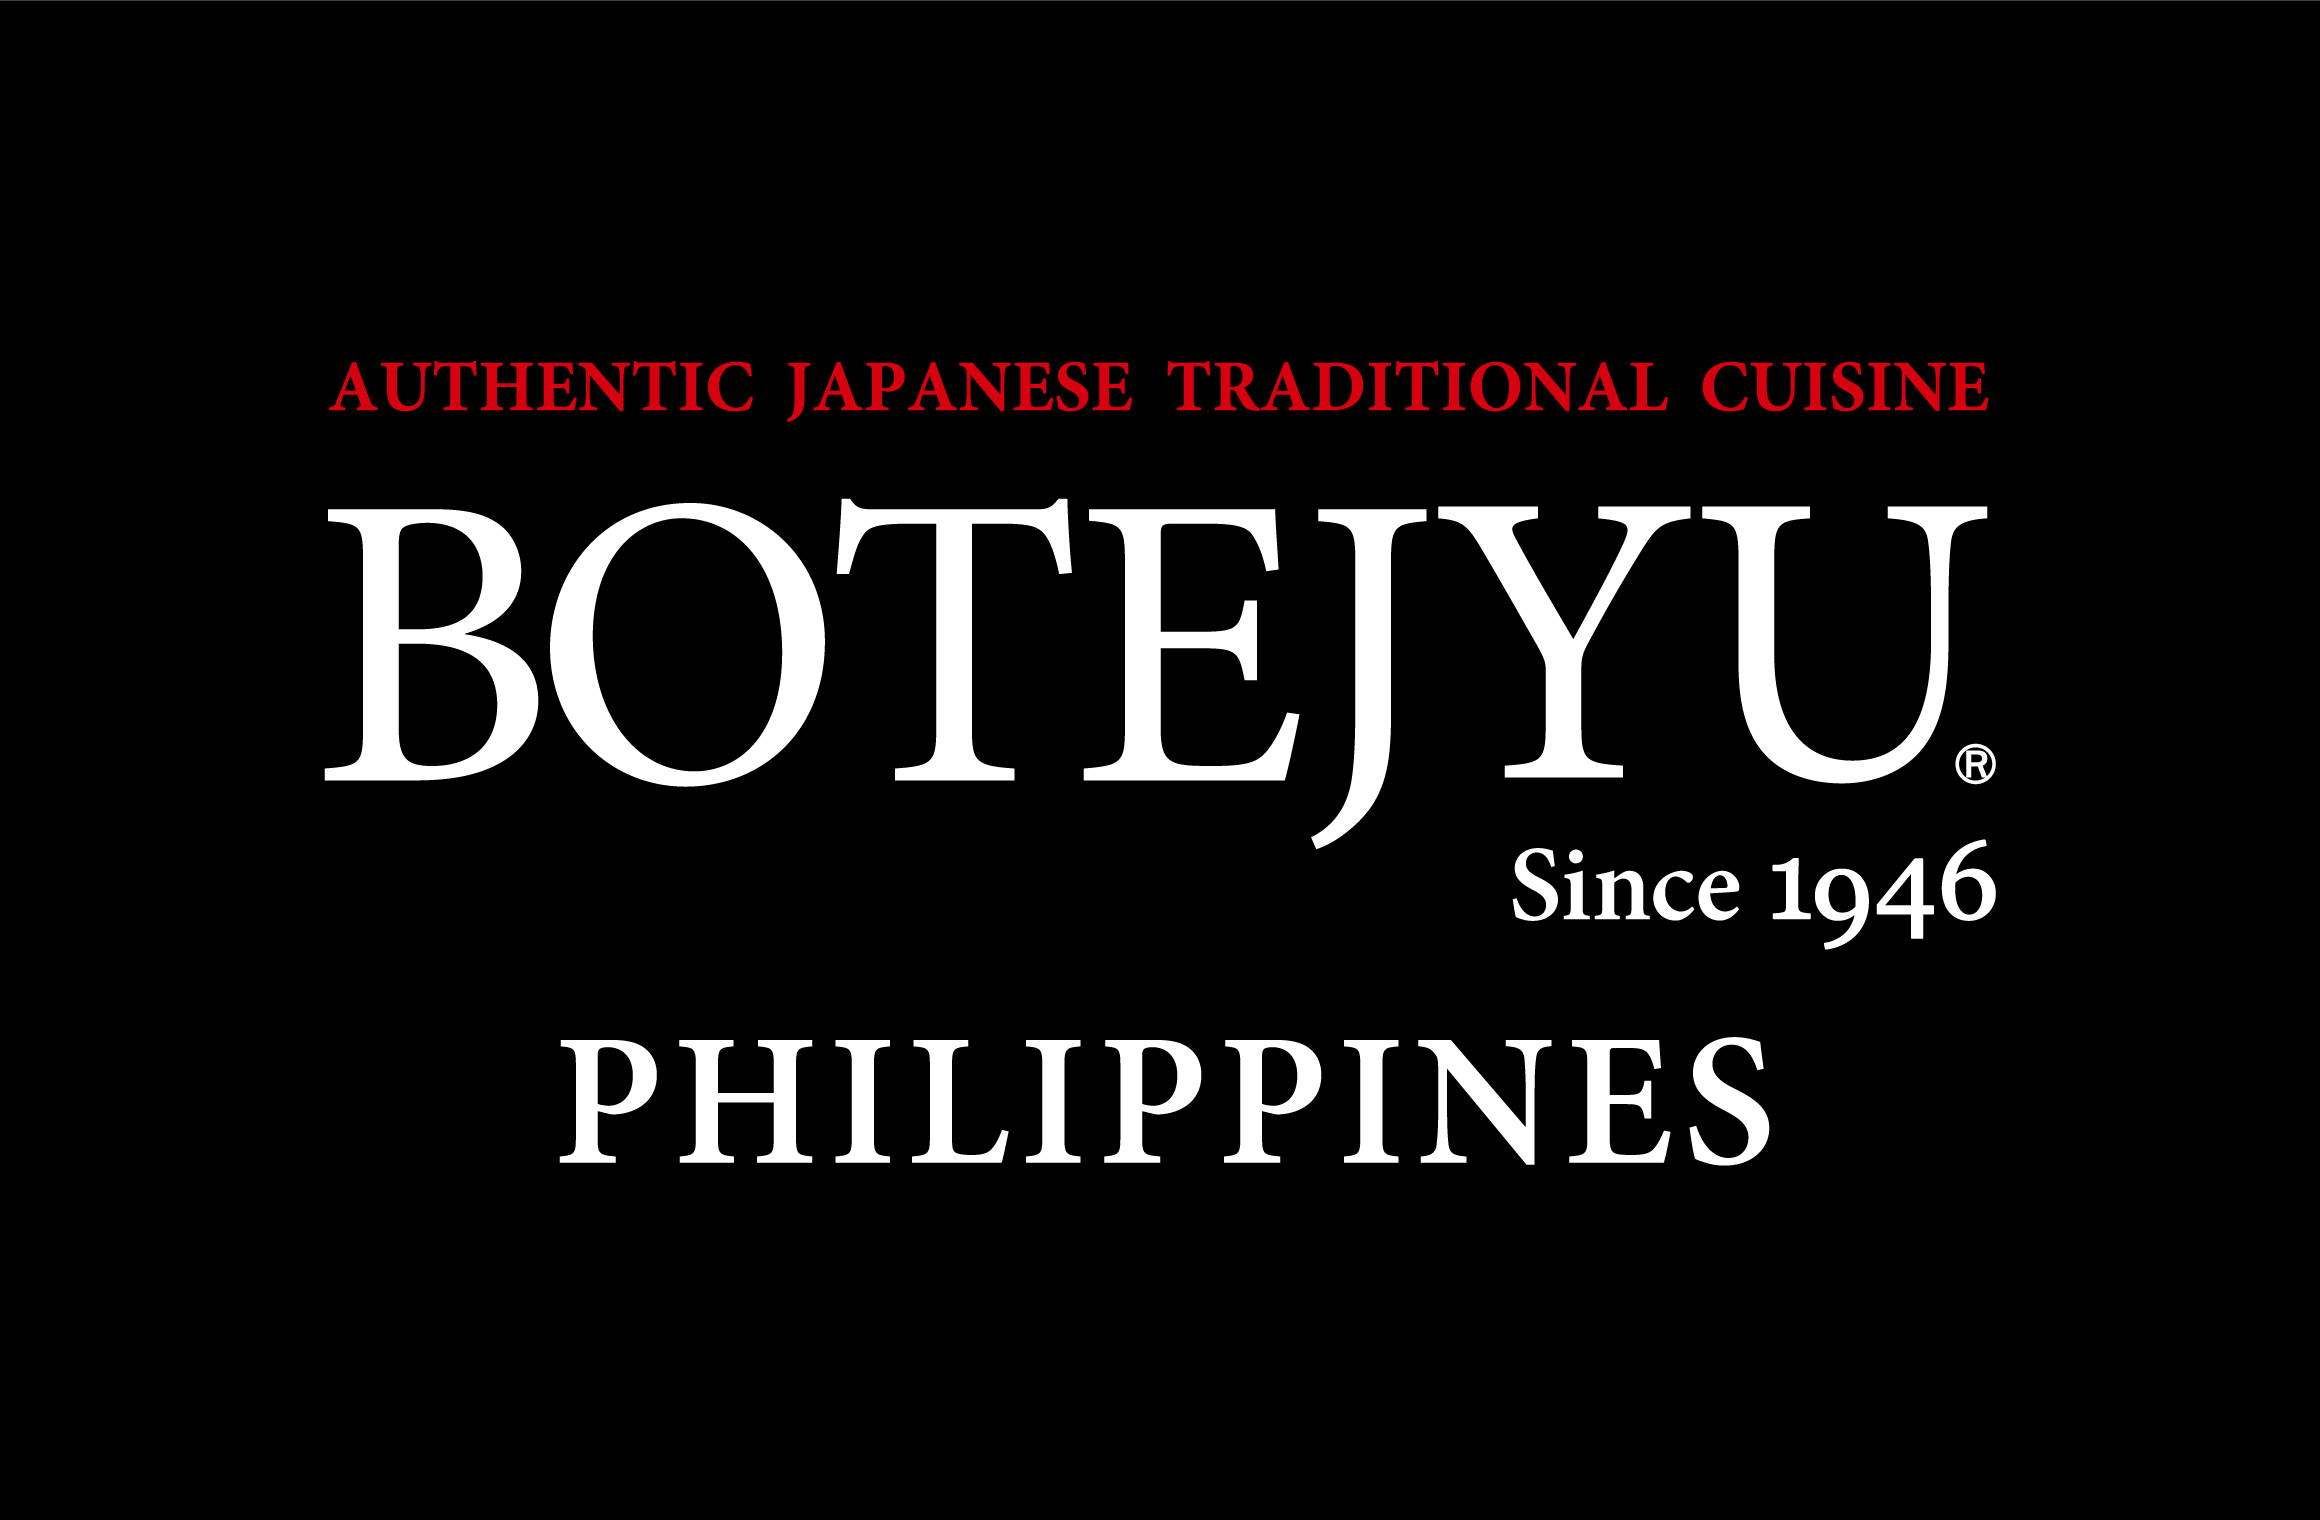 「BOTEJYU® Philippines 52 / SM City Valenzuela」: オープン致します。